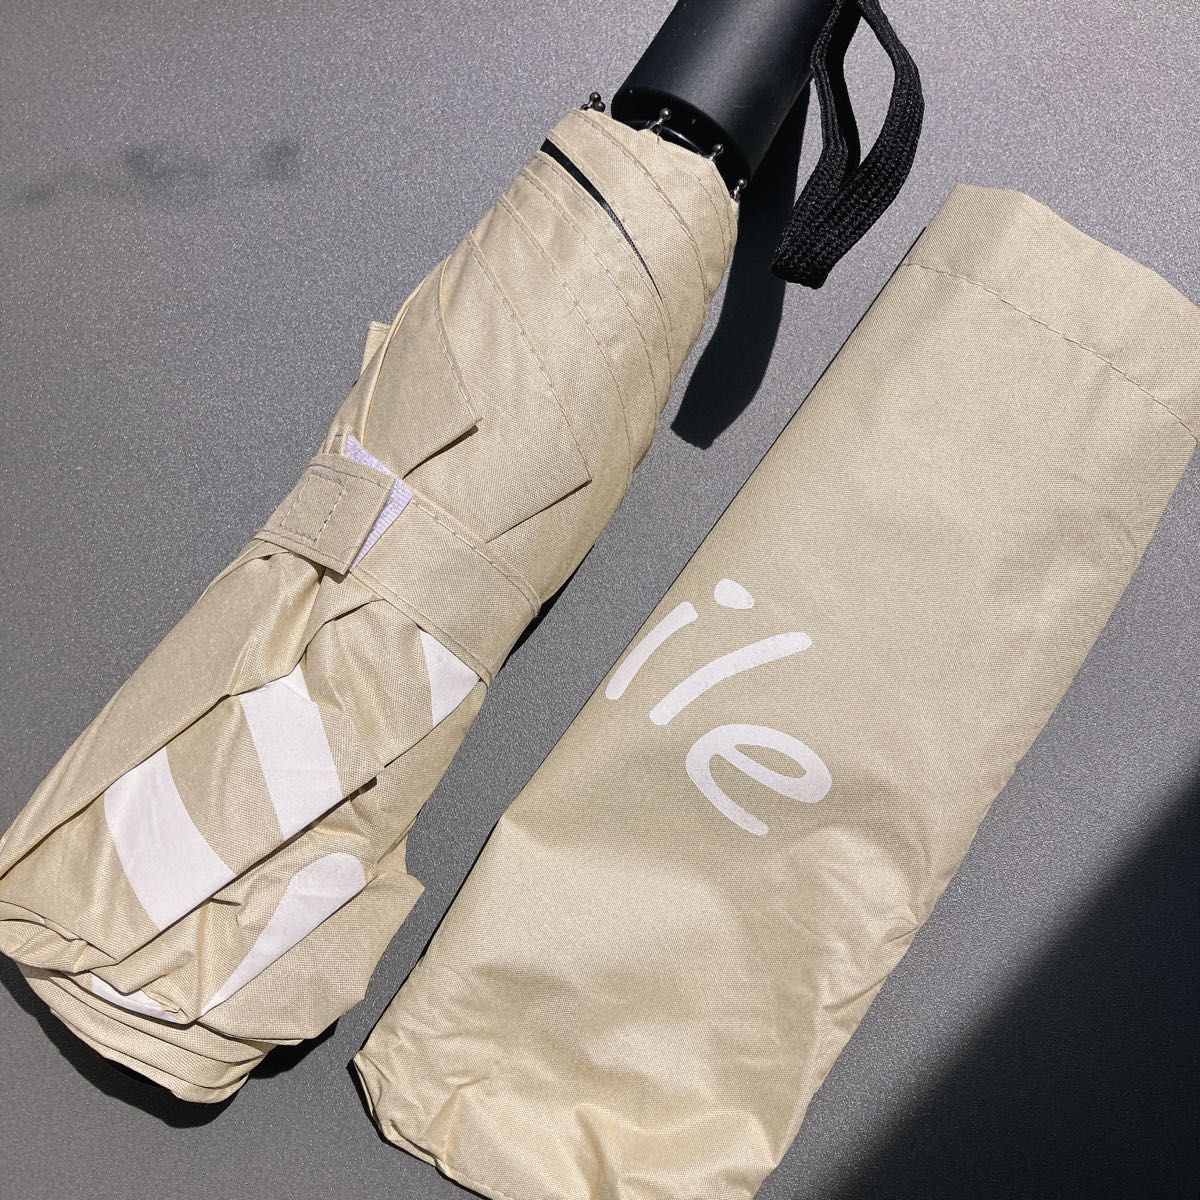 新品未使用 日傘 日焼け対策 遮光 撥水 雨傘 雨晴兼用 ベージュ  可愛い折り畳み傘 UVカット おしゃれなデザイン 自動開閉